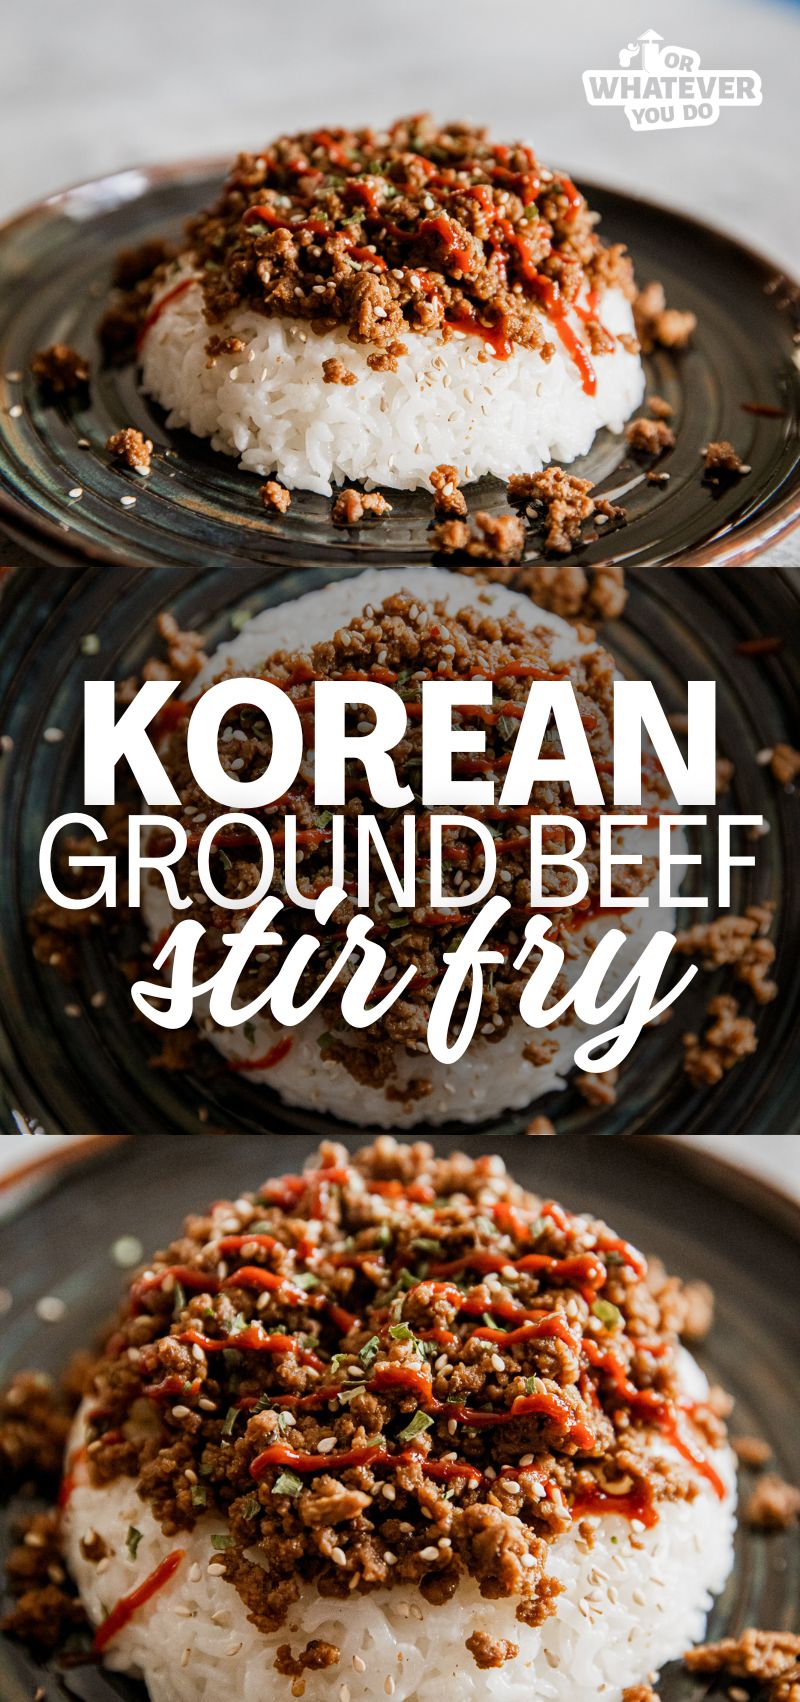 Korean Ground Beef Stir Fry